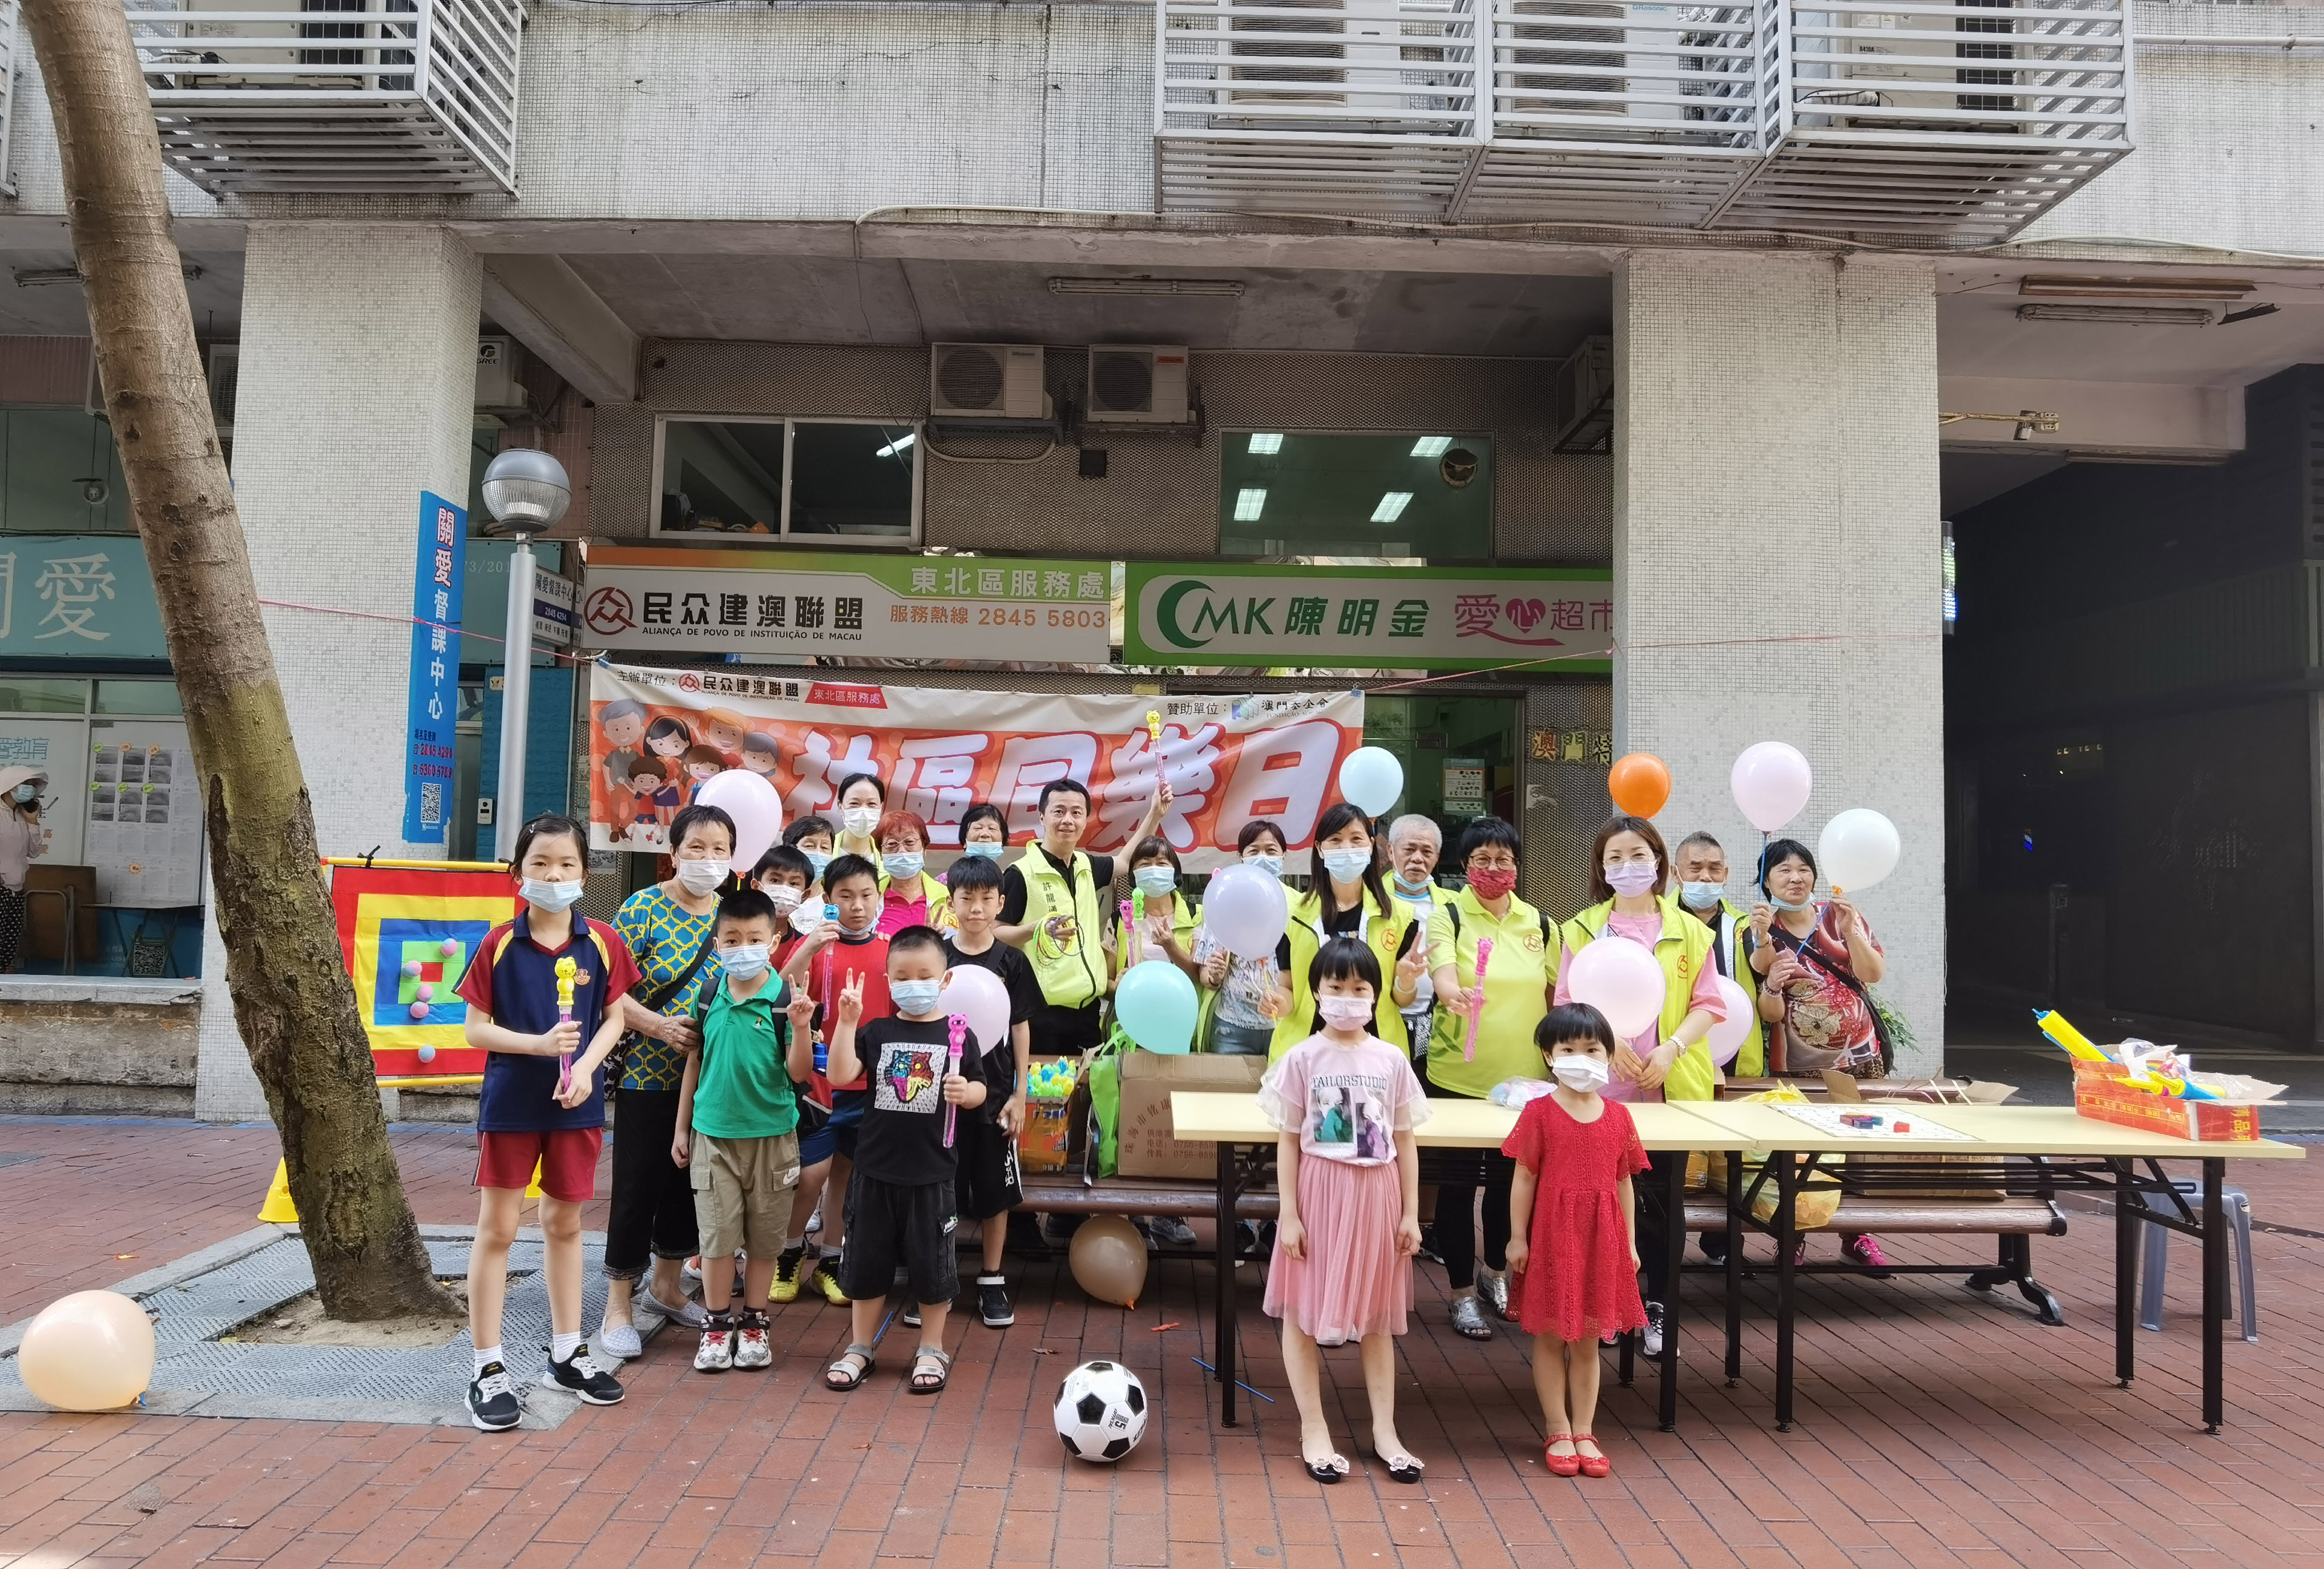 民建聯舉辦“社區同樂日” 促進鄰里和家庭互動友愛1.JPG